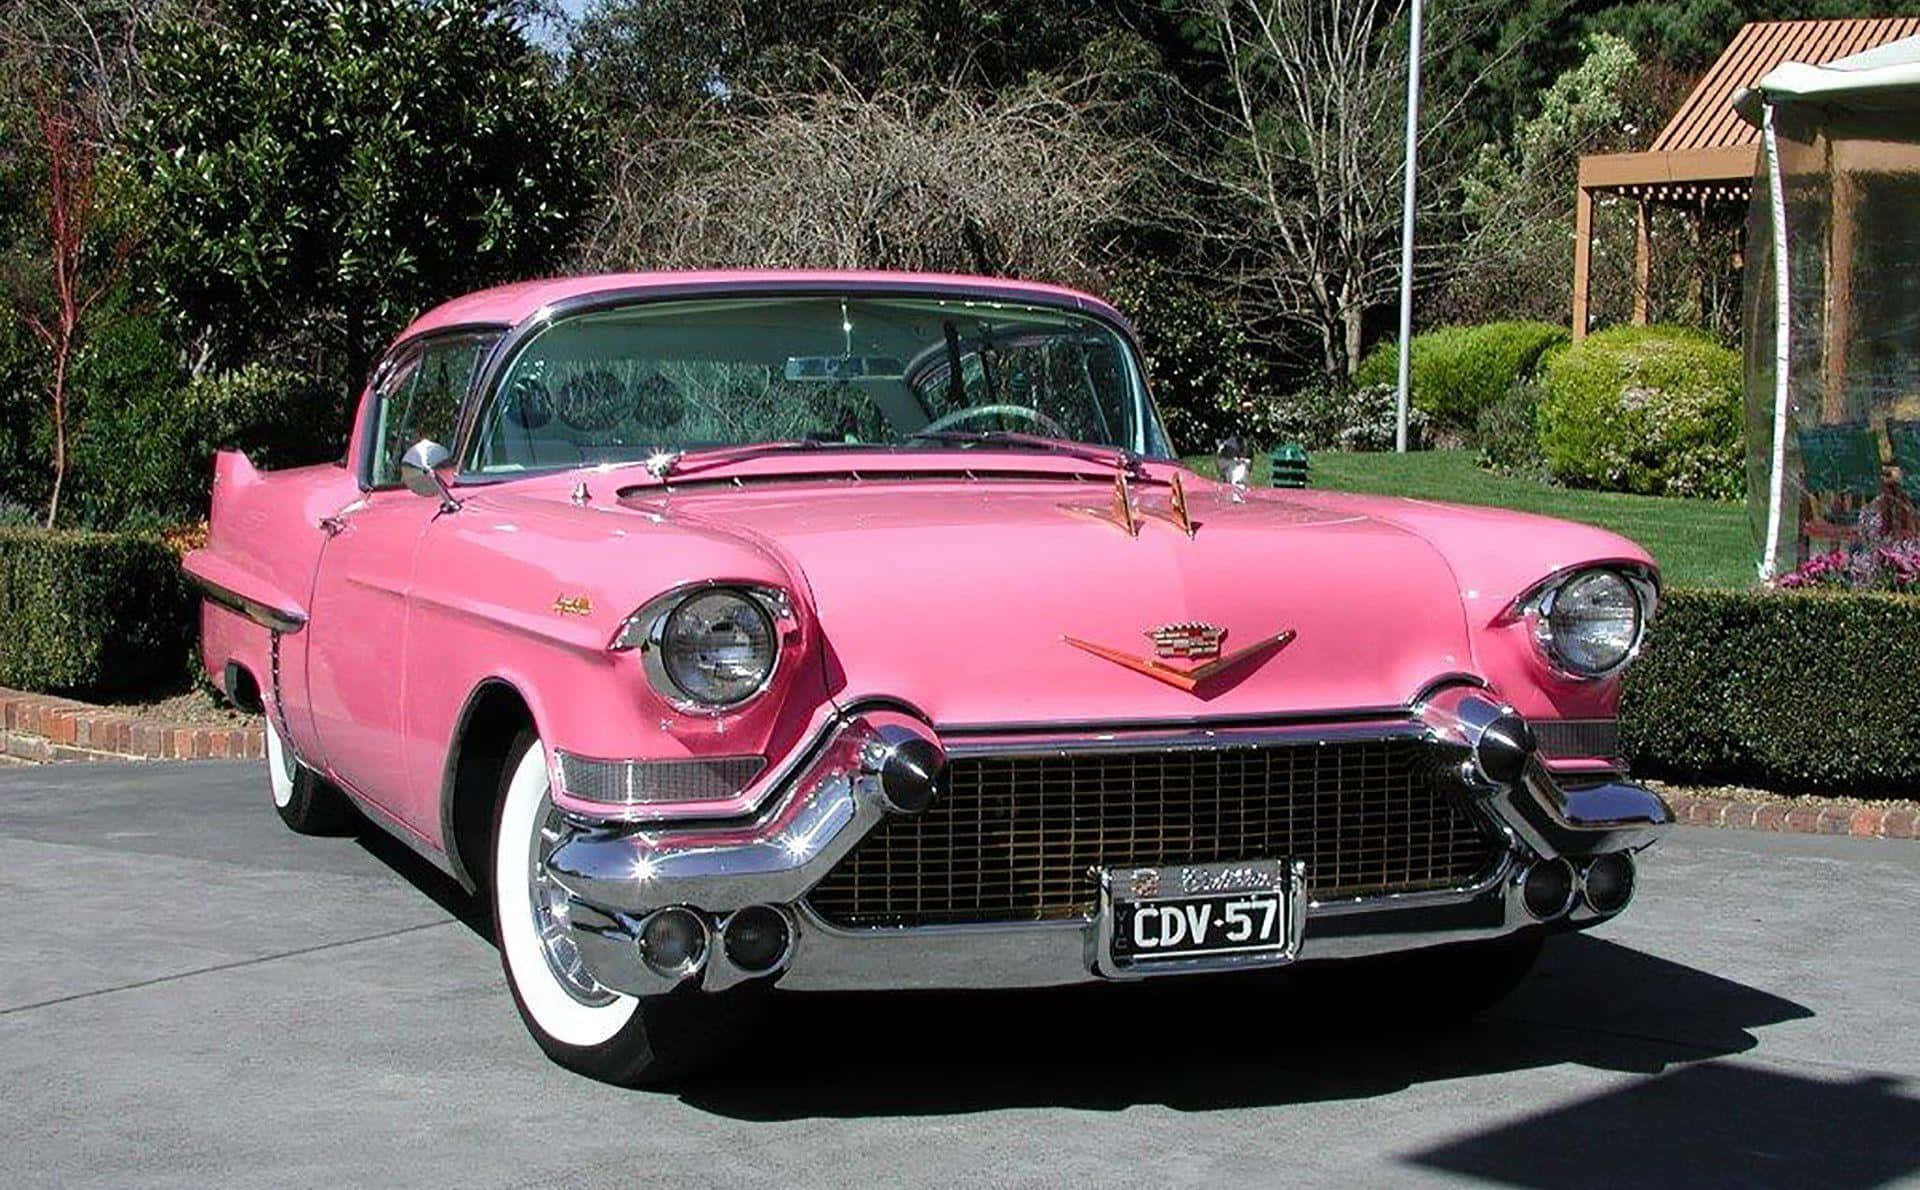 Tag en tur i denne smukke pink vintage bil tapet. Wallpaper